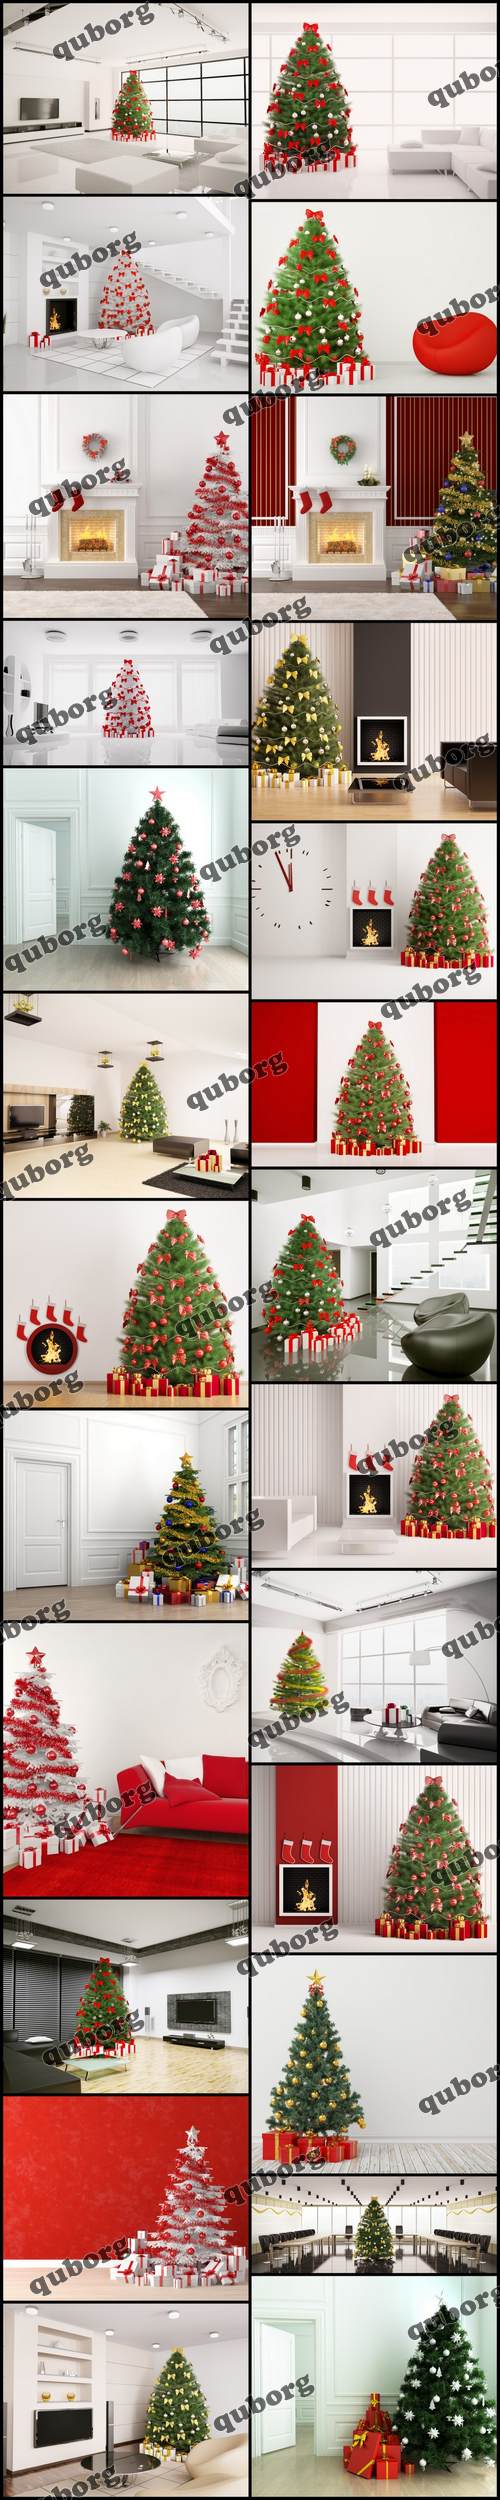 Stock Photos - 3D Render Christmas Interiors